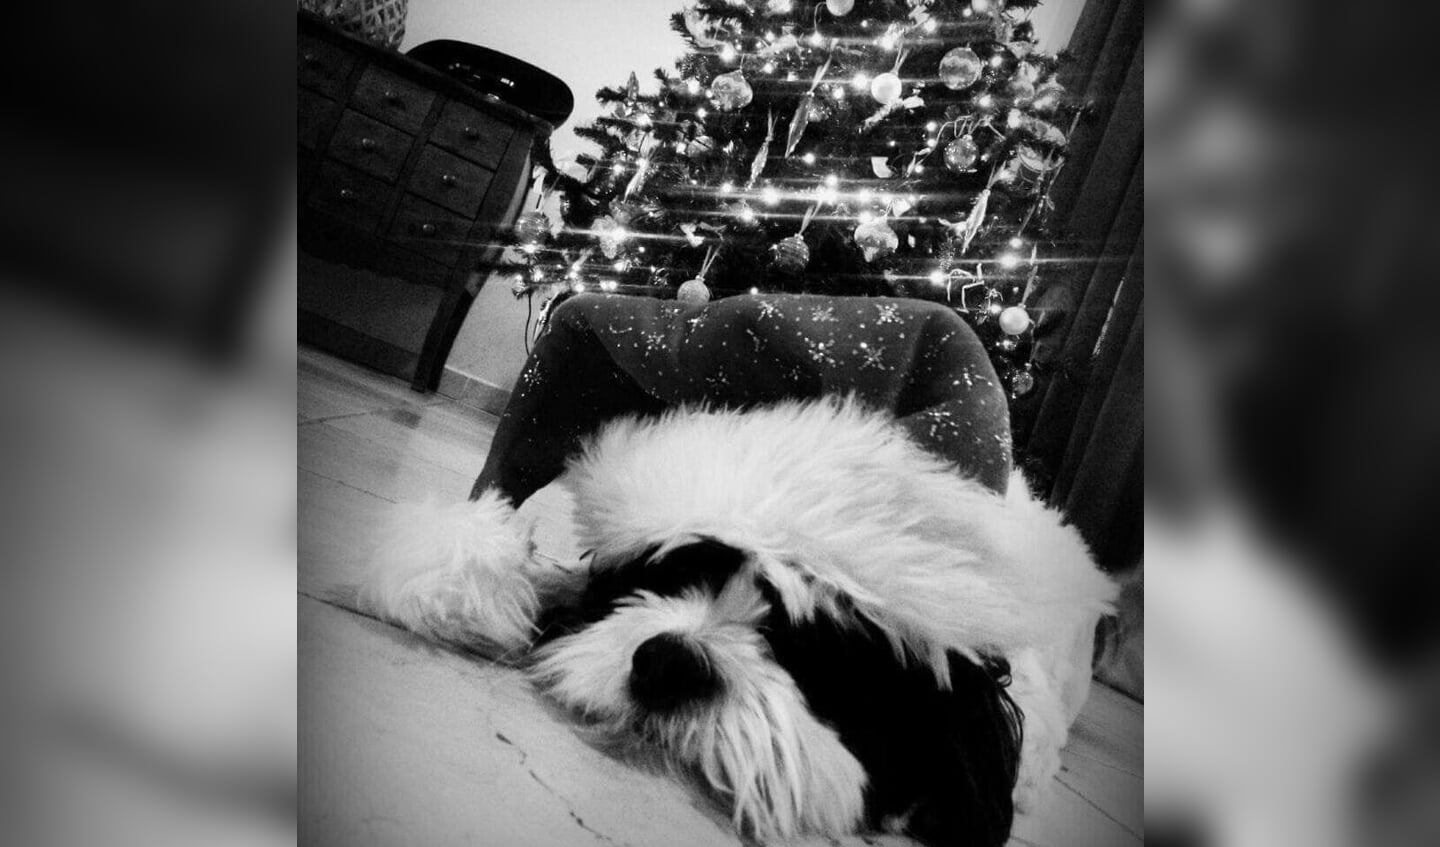 Hondje Pebbles van baasje Ilonka ligt lekker te snurken met de kerstmuts op.